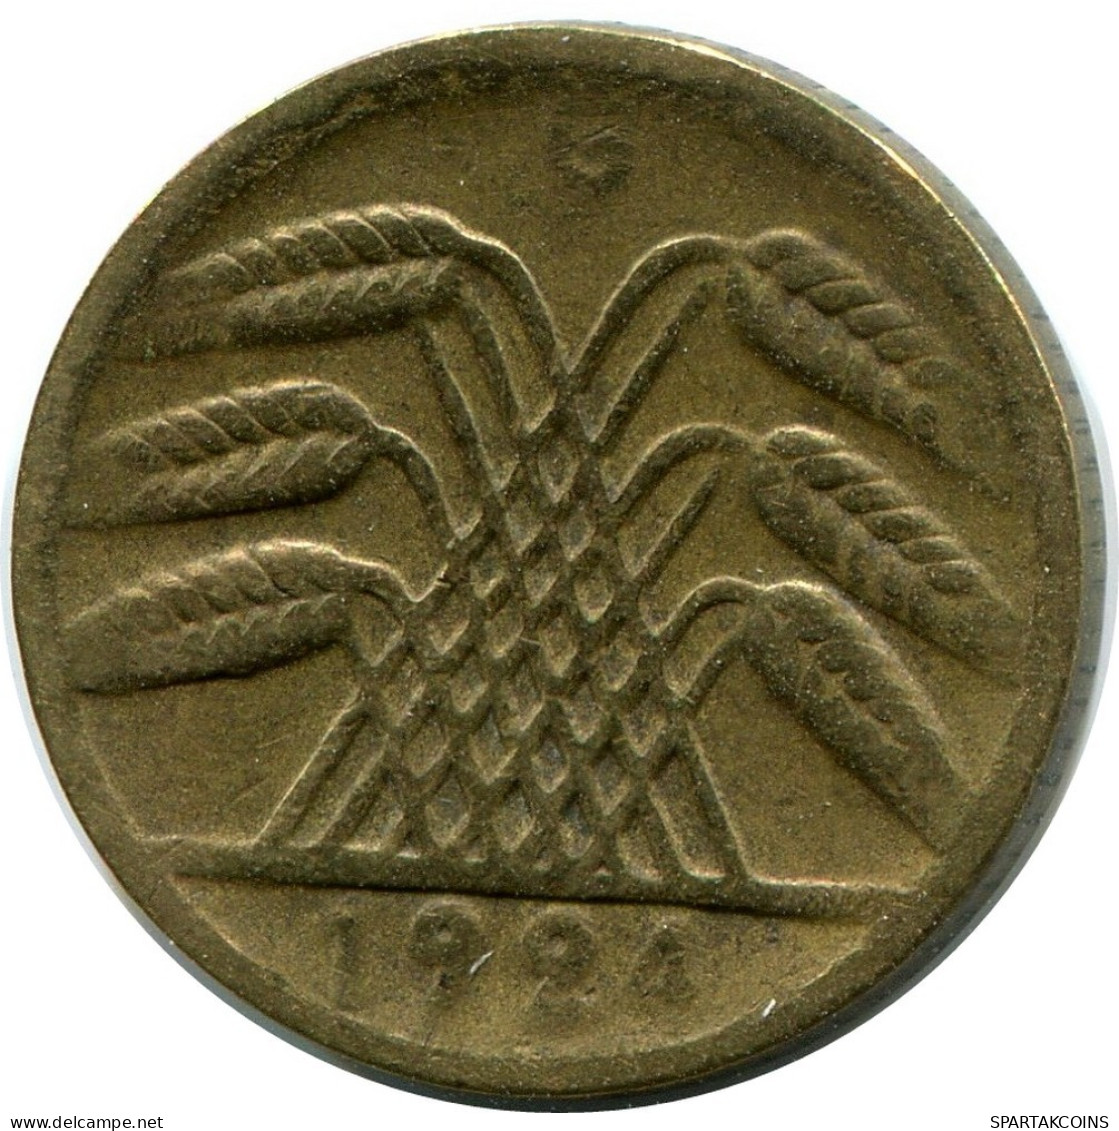 5 RENTENPFENNIG 1924 G DEUTSCHLAND Münze GERMANY #DB871.D.A - 5 Rentenpfennig & 5 Reichspfennig